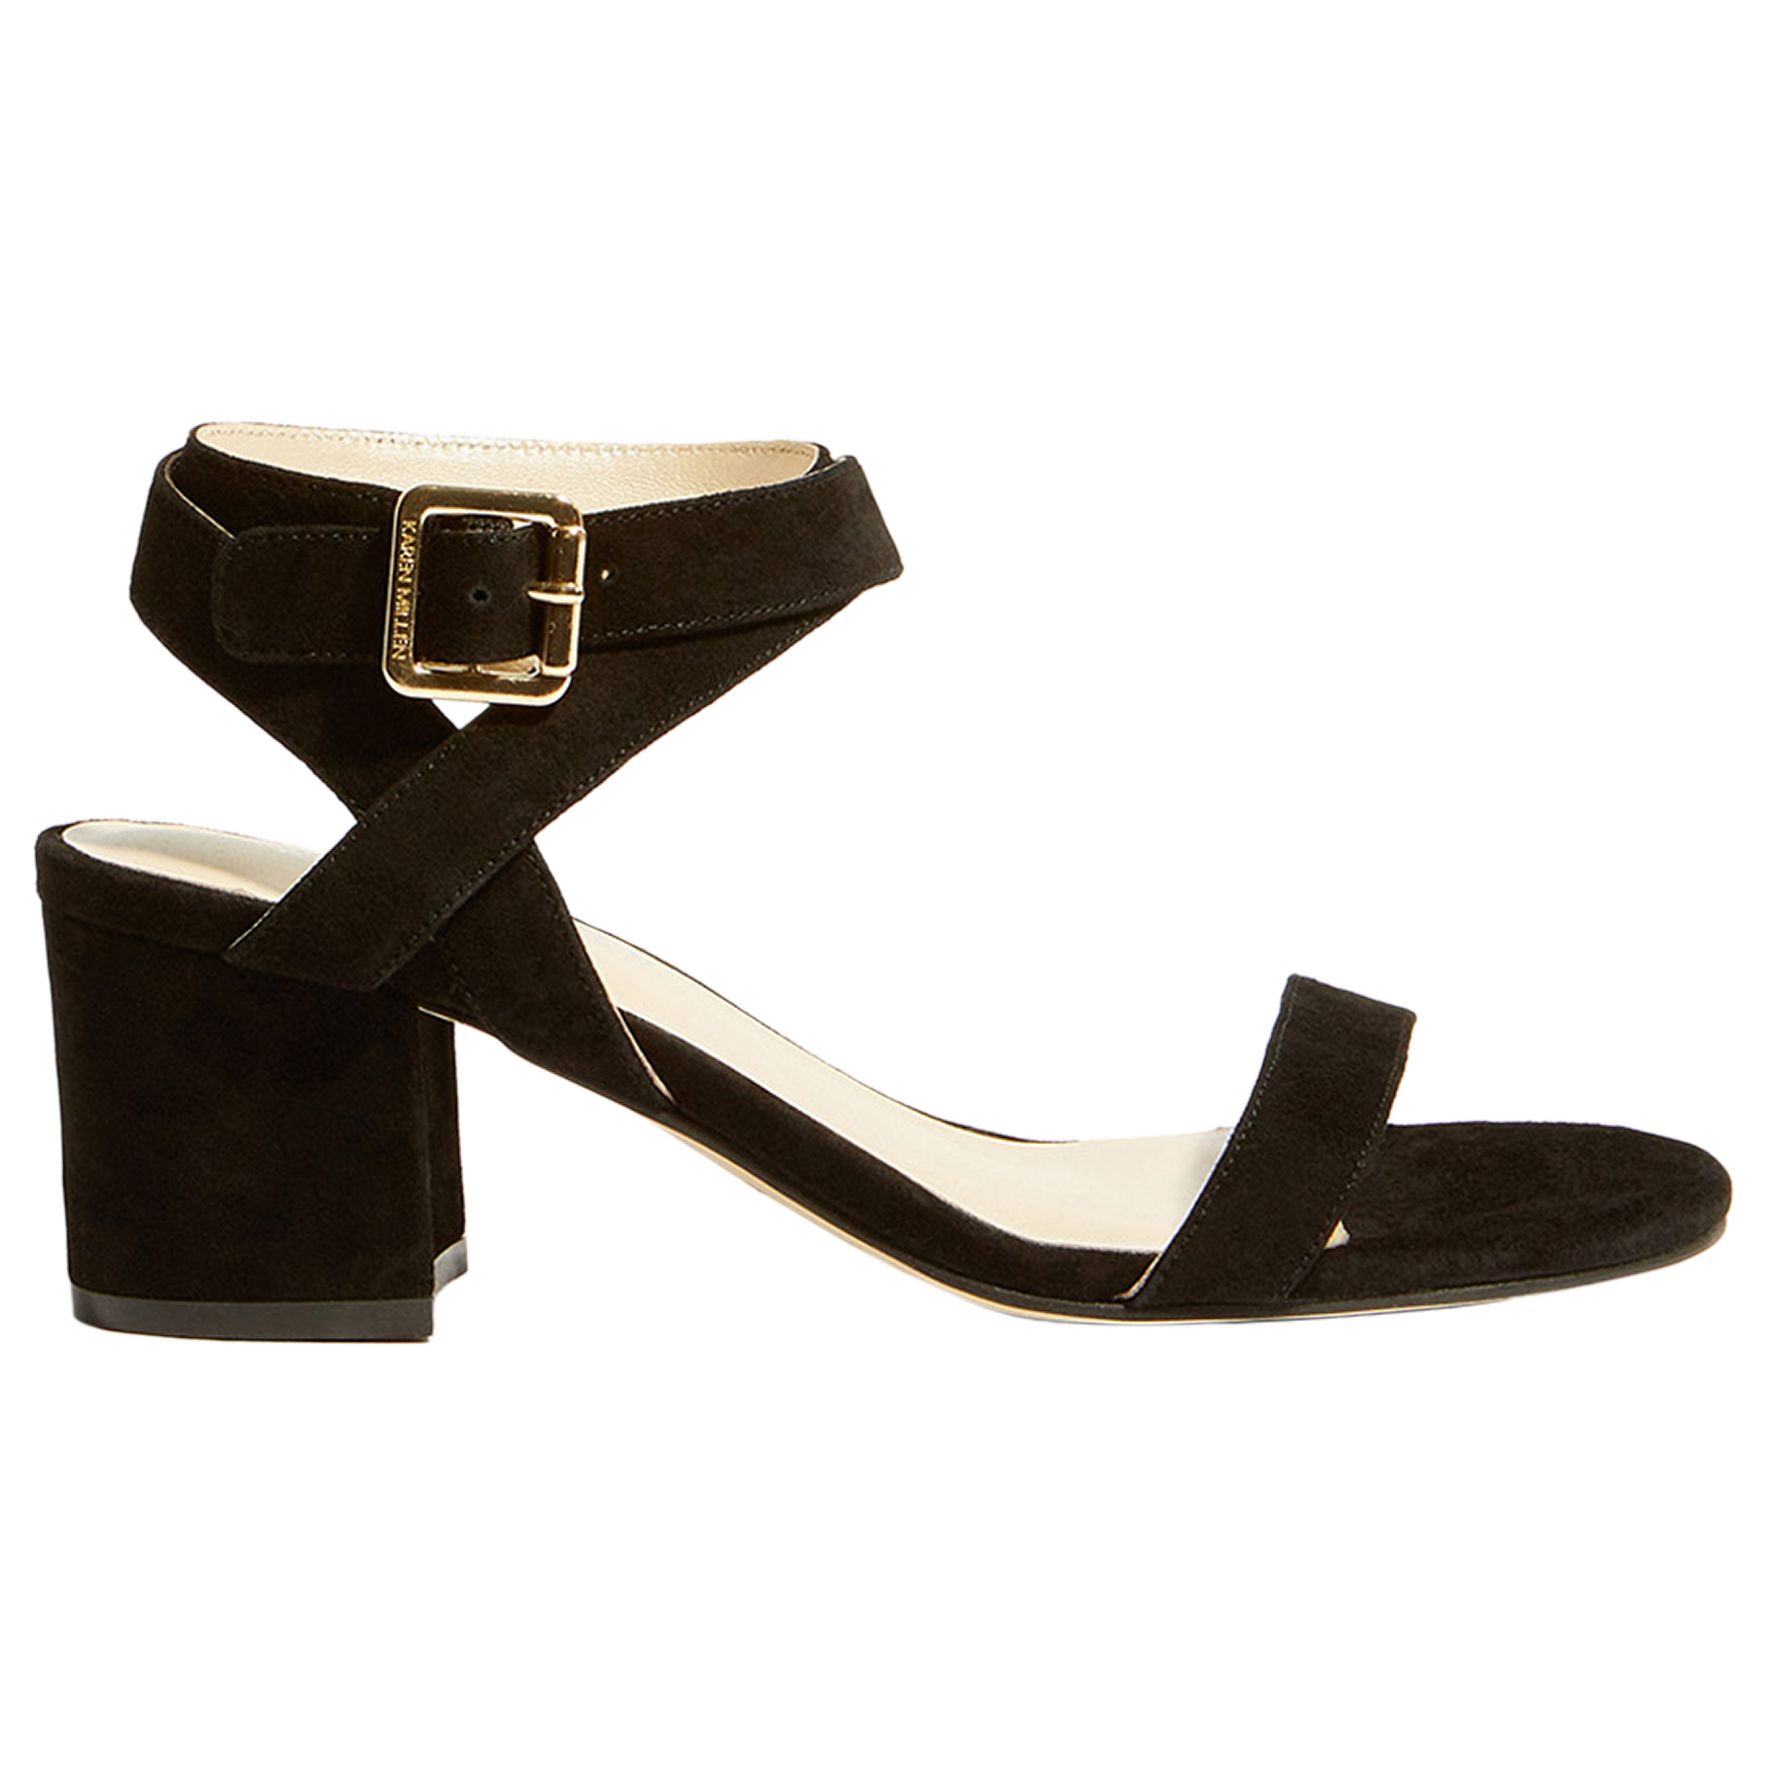 Karen Millen Block Heel Strap Sandals, Black Suede